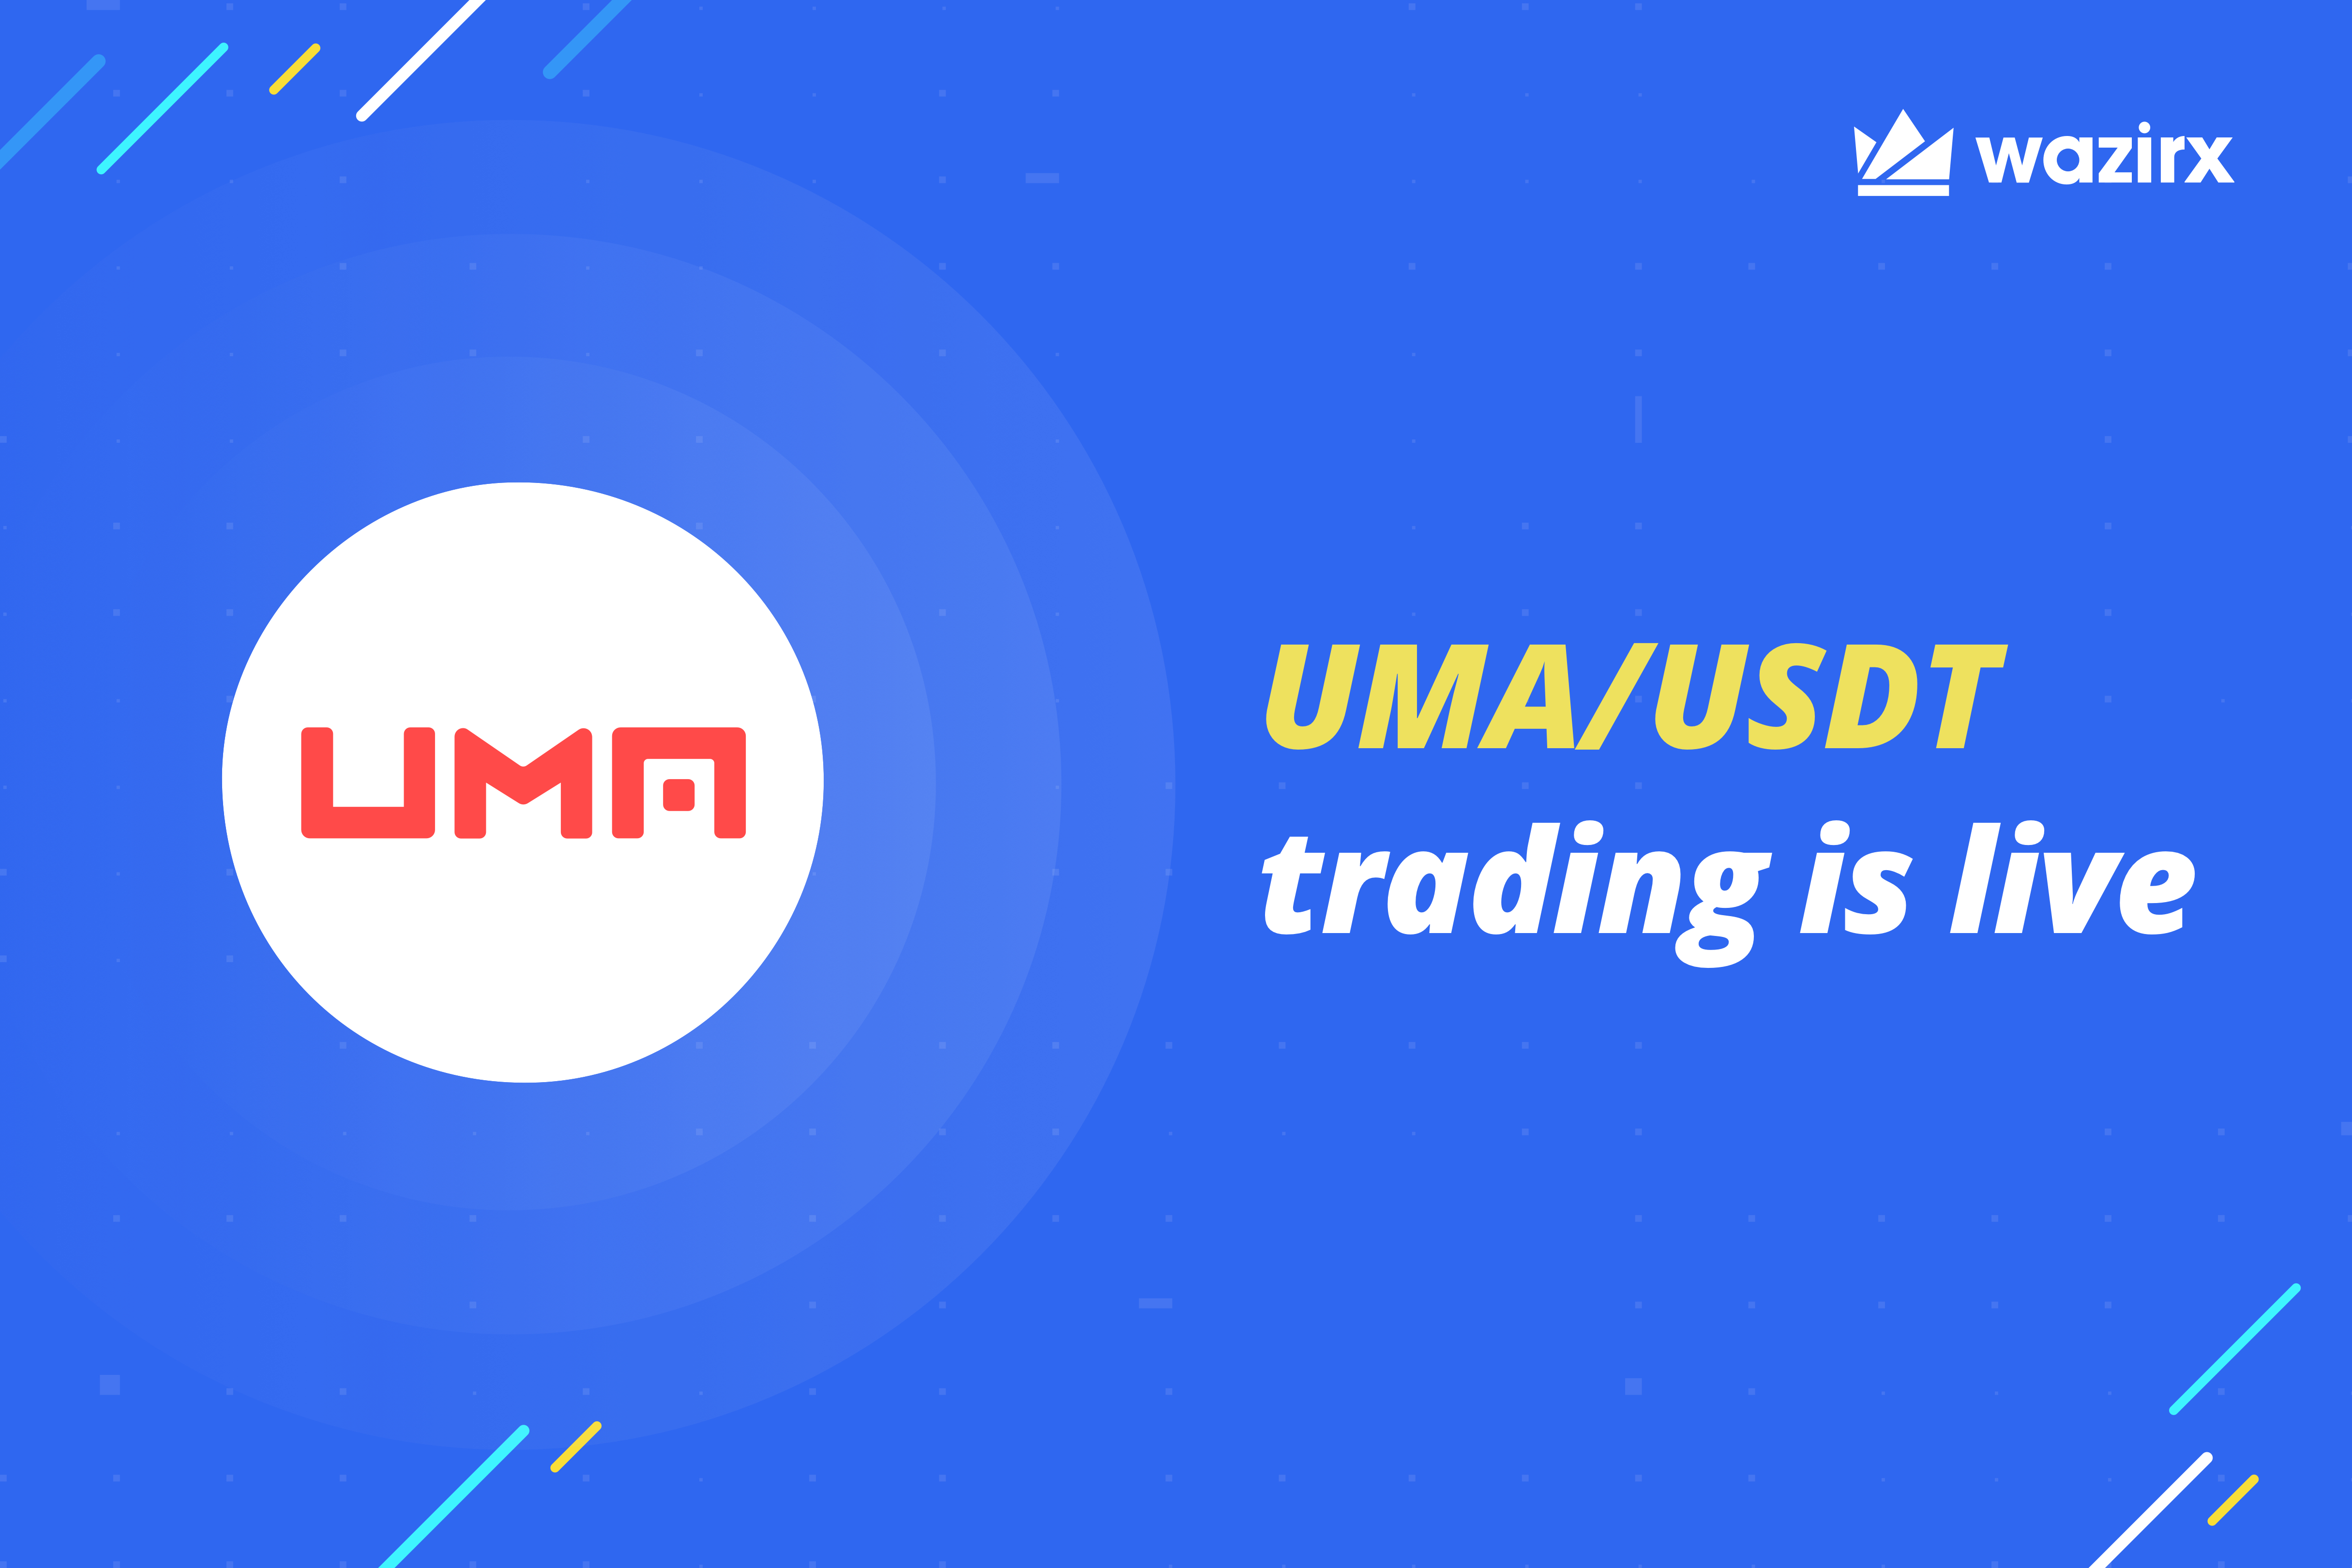 UMA/USDT trading on WazirX